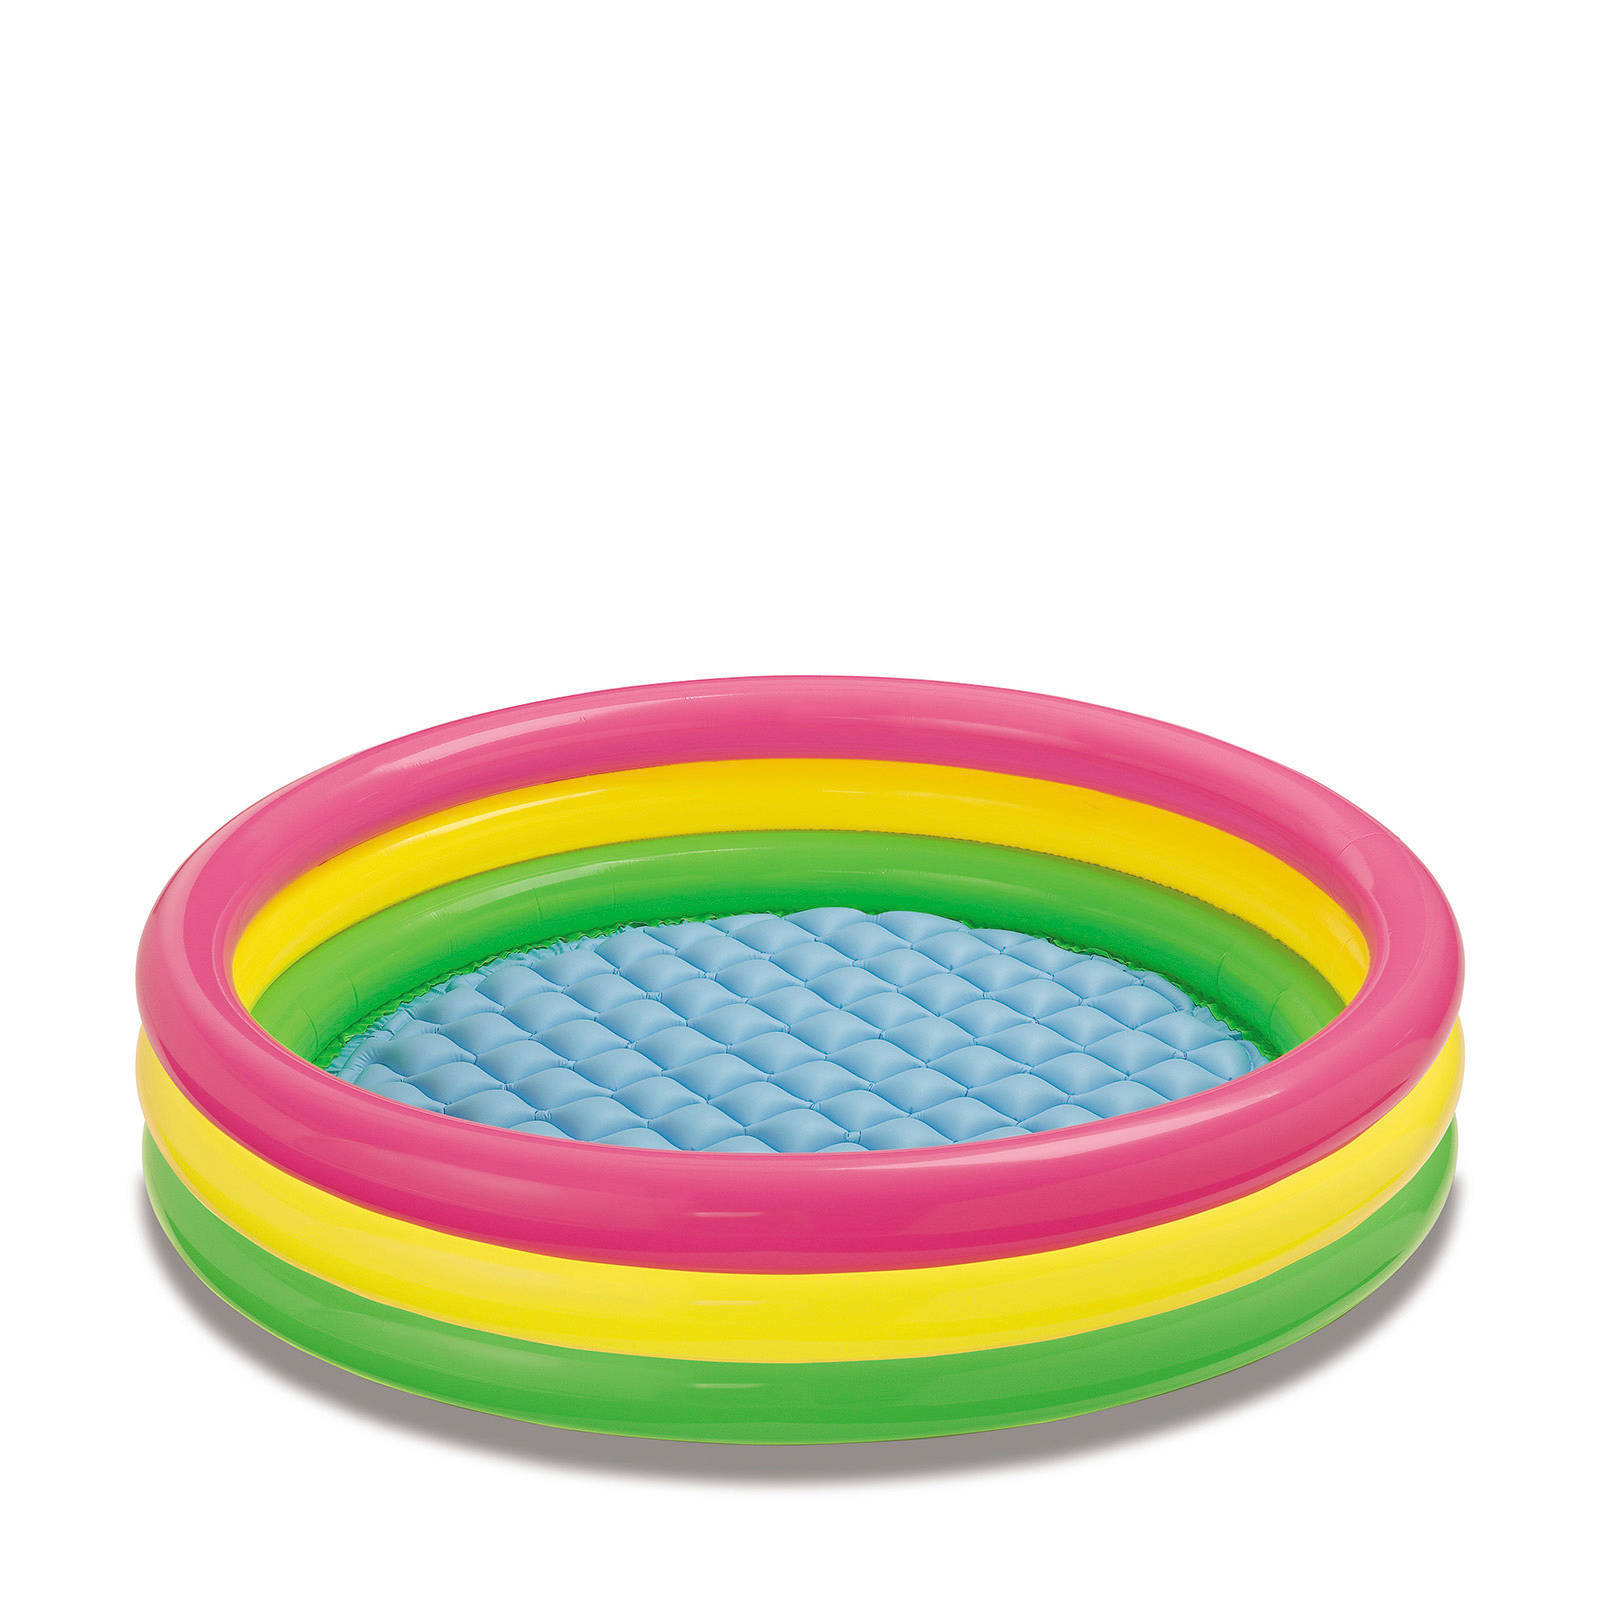 Intex Zwembad Sunset opblaasbaar 3 ringen 147x33 cm online kopen